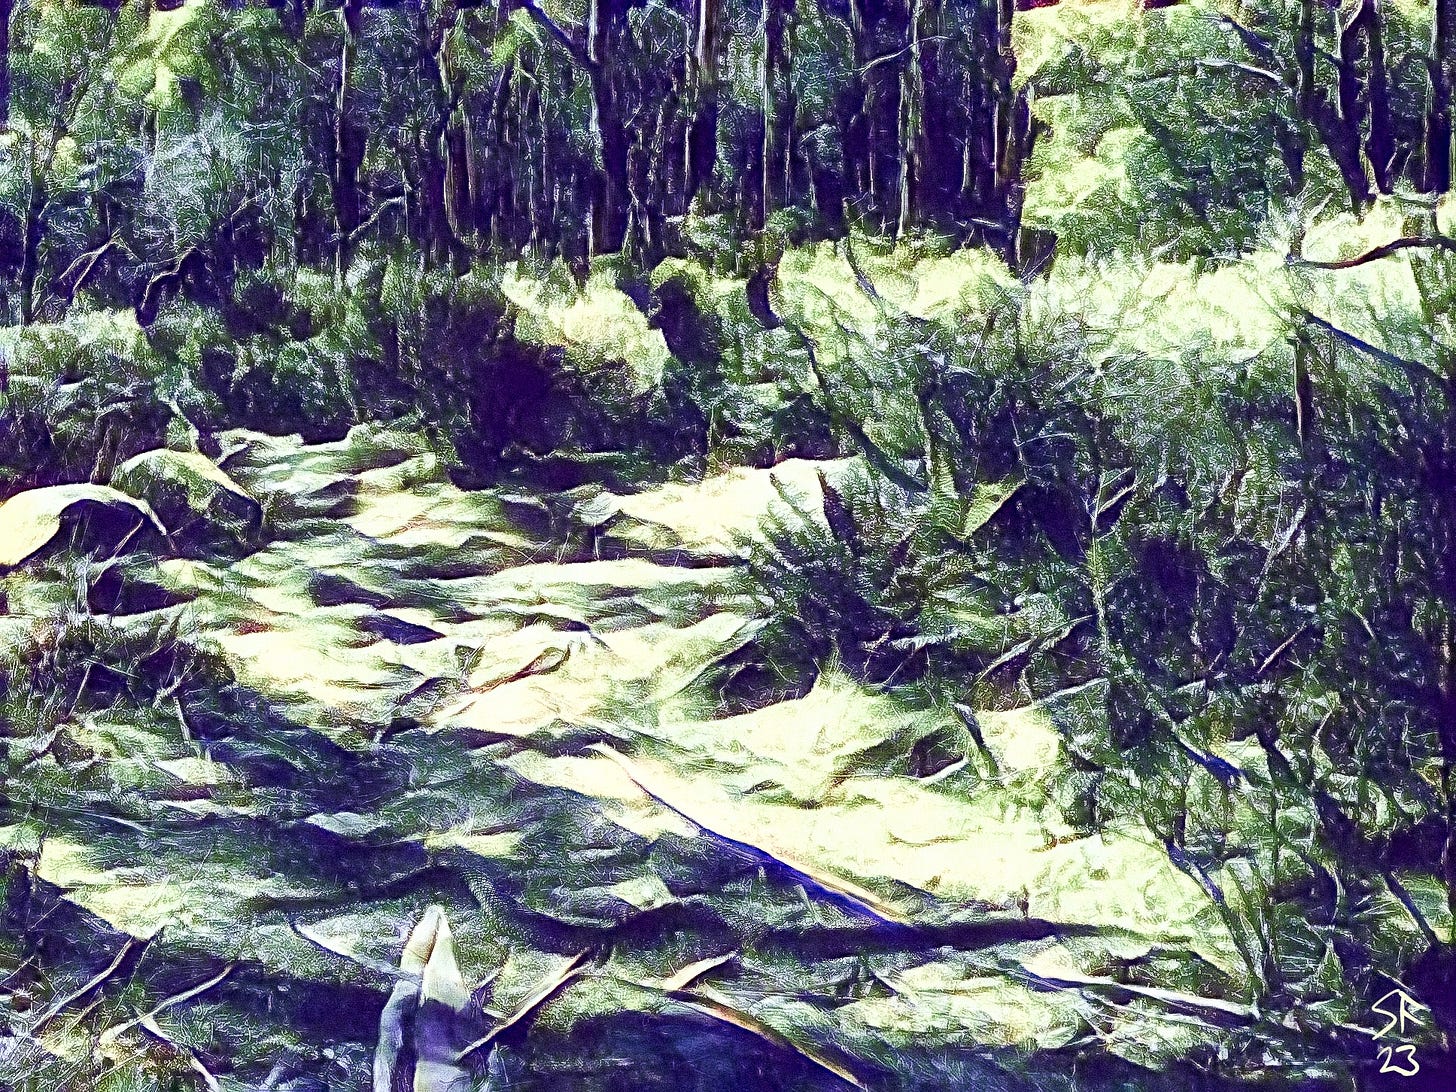 Large snake crossing a bushland path